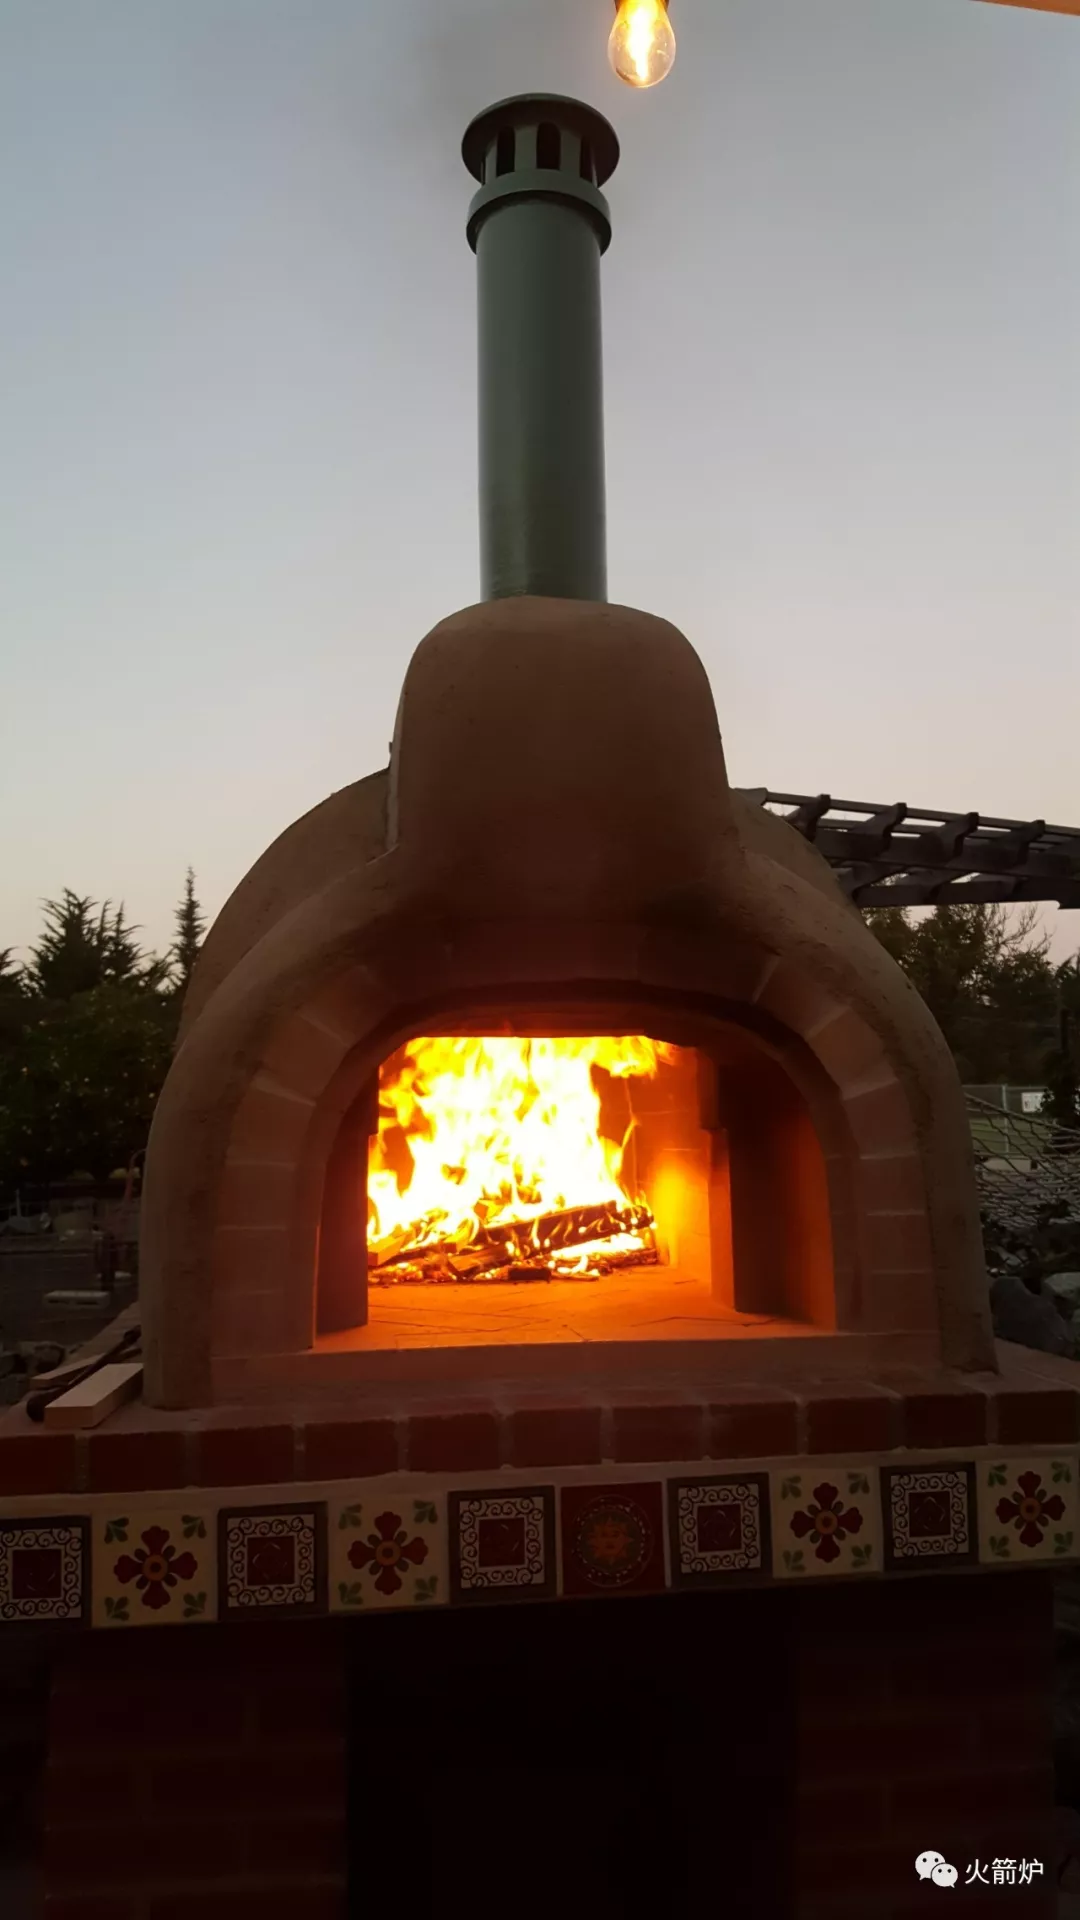 自制后院烧烤炉 BBQ迷可以自己做个高逼格的烤炉 - Leesharing